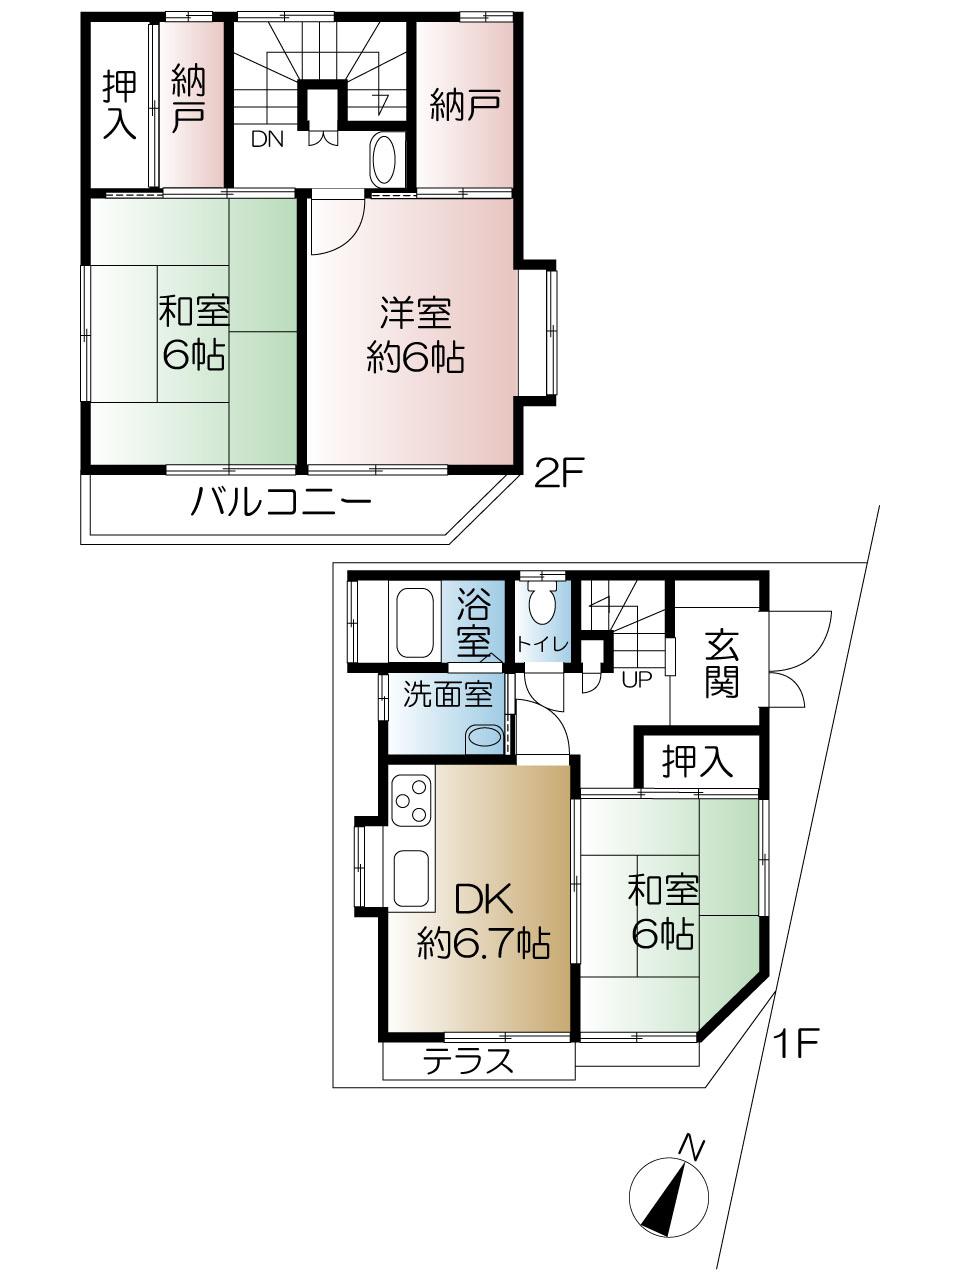 Floor plan. 27,900,000 yen, 3DK, Land area 55.43 sq m , Building area 64.58 sq m